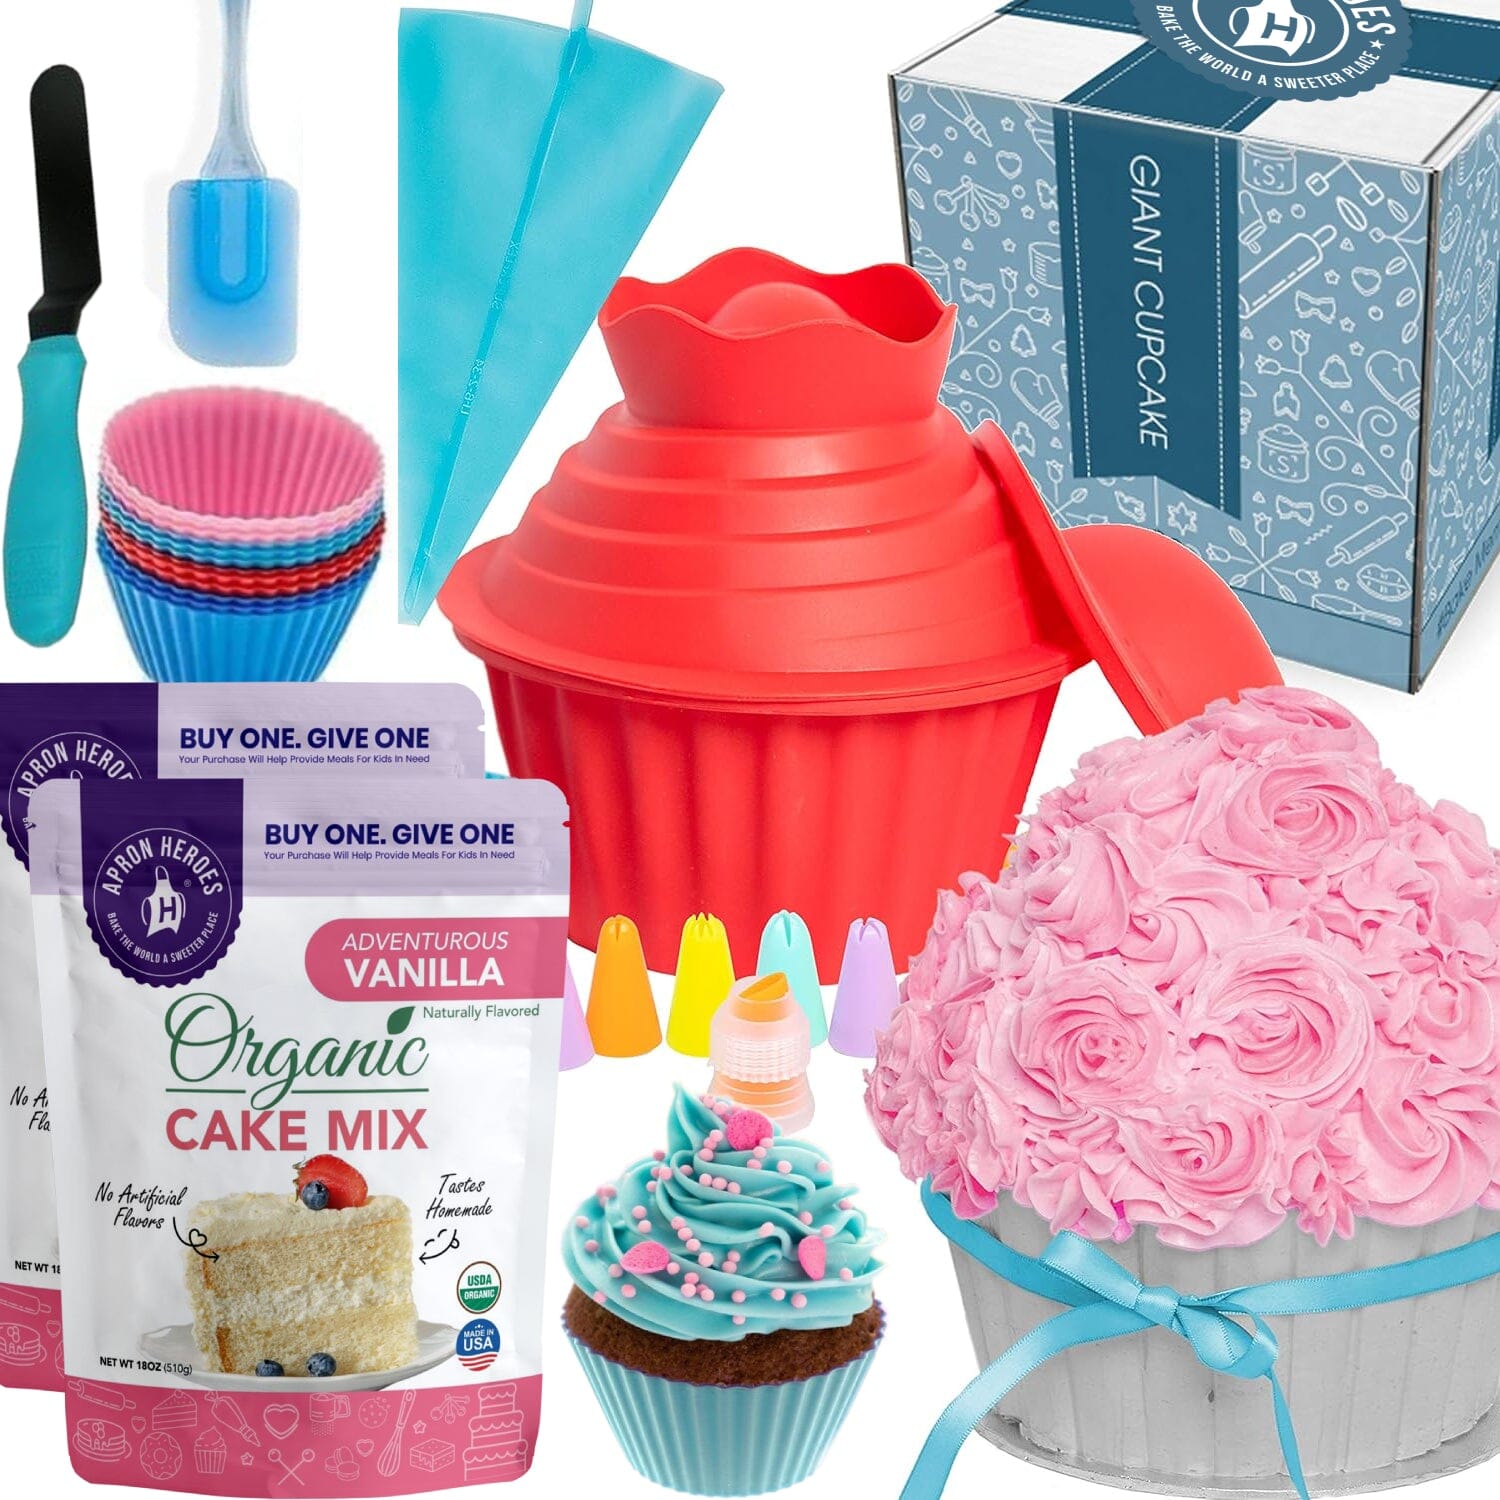 OMG Giant Cupcake Kit + Organic Cake Mix Baking kits FBA OMG Cupcake Kit & Vanilla Organic Cake Mix 